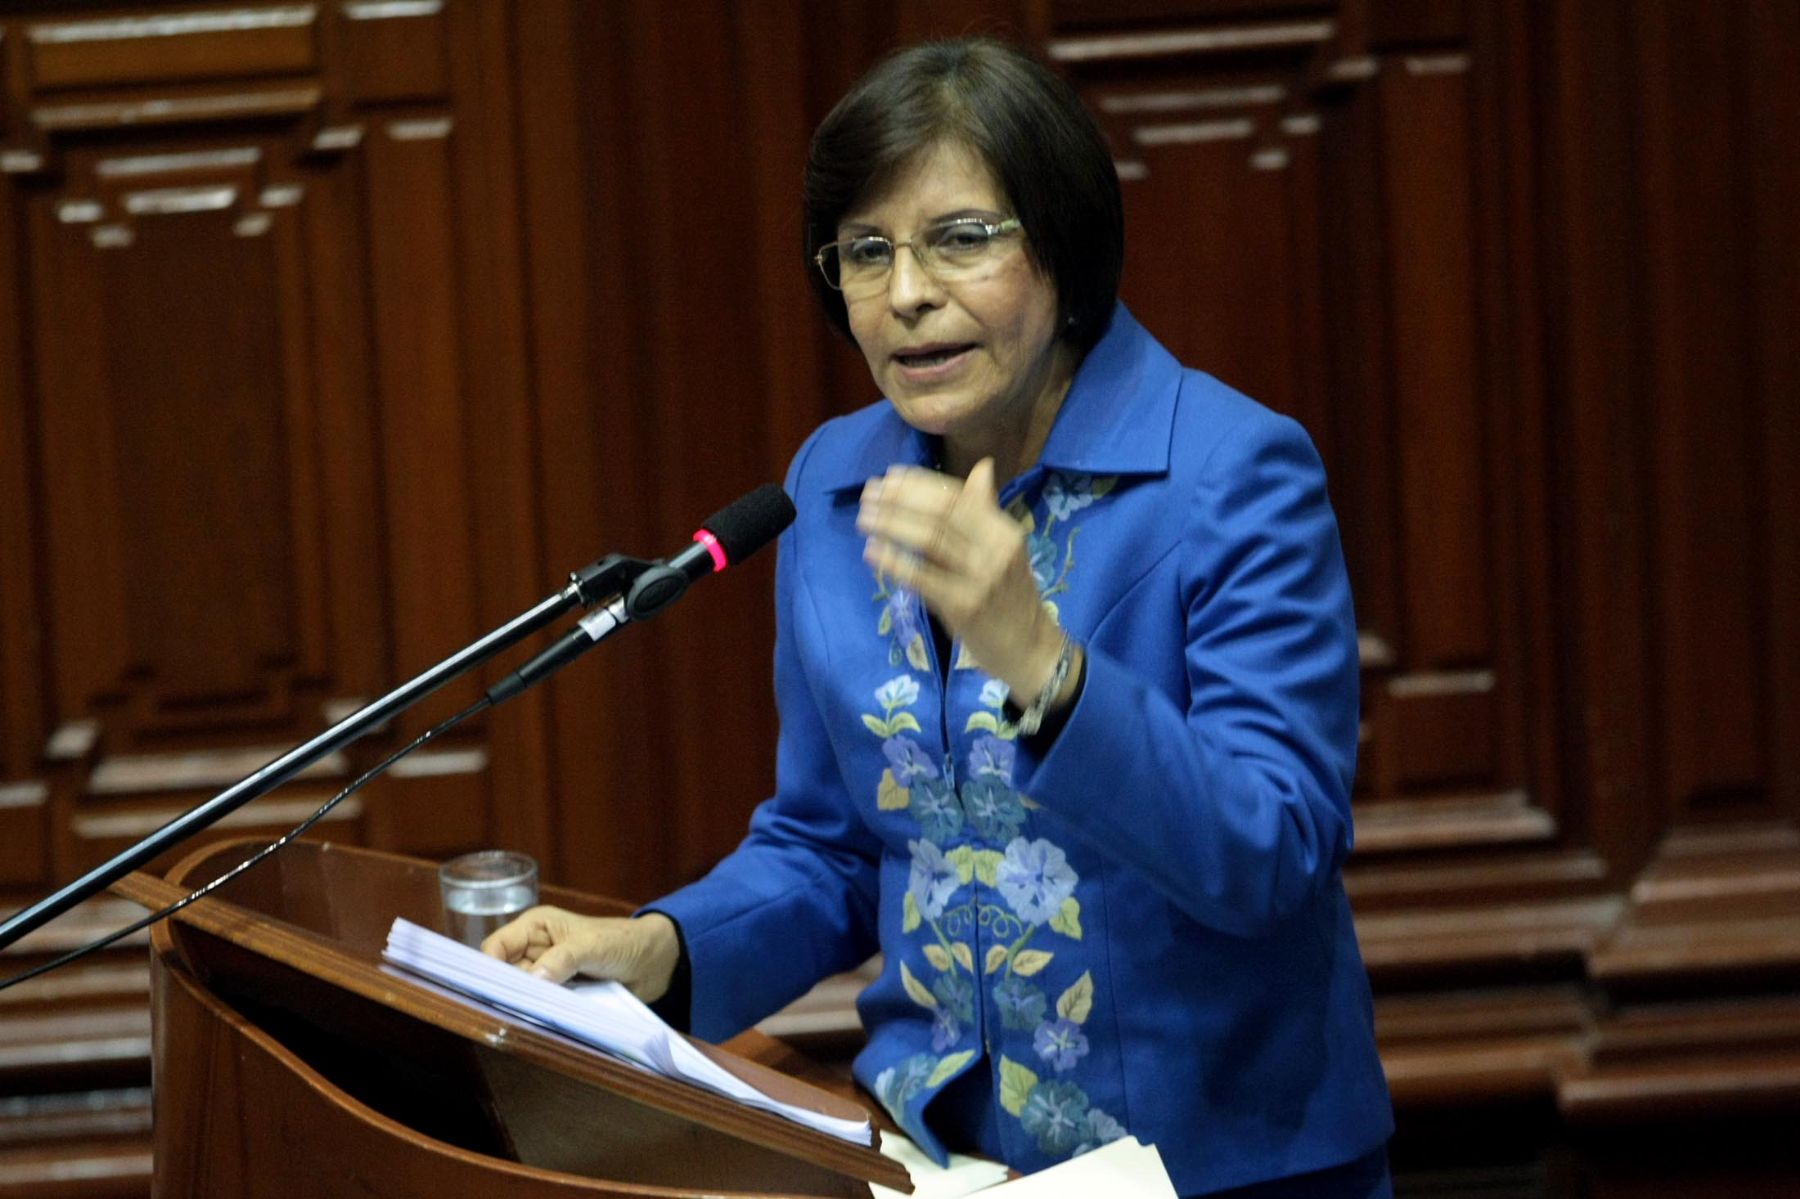 La ministra del Interior, Mercedes Cabanilas, responde el pliego interpelatorio en el Congreso de la República. Foto: ANDINA/Alberto Orbegoso.